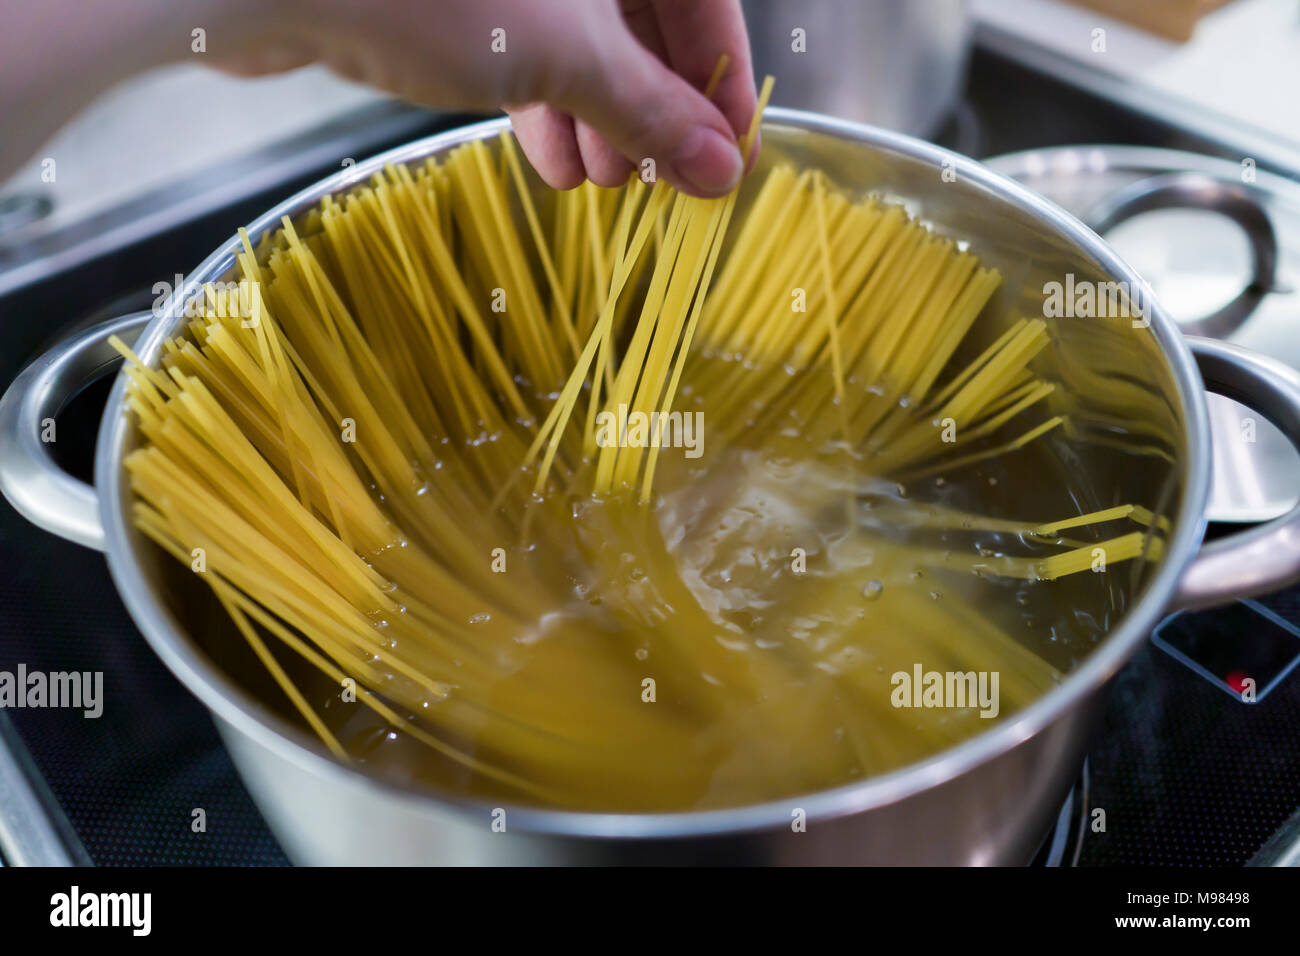 https://c8.alamy.com/compit/m98498/gli-spaghetti-e-cotta-in-una-pentola-grande-con-acqua-bollente-il-pranzo-per-la-famiglia-m98498.jpg